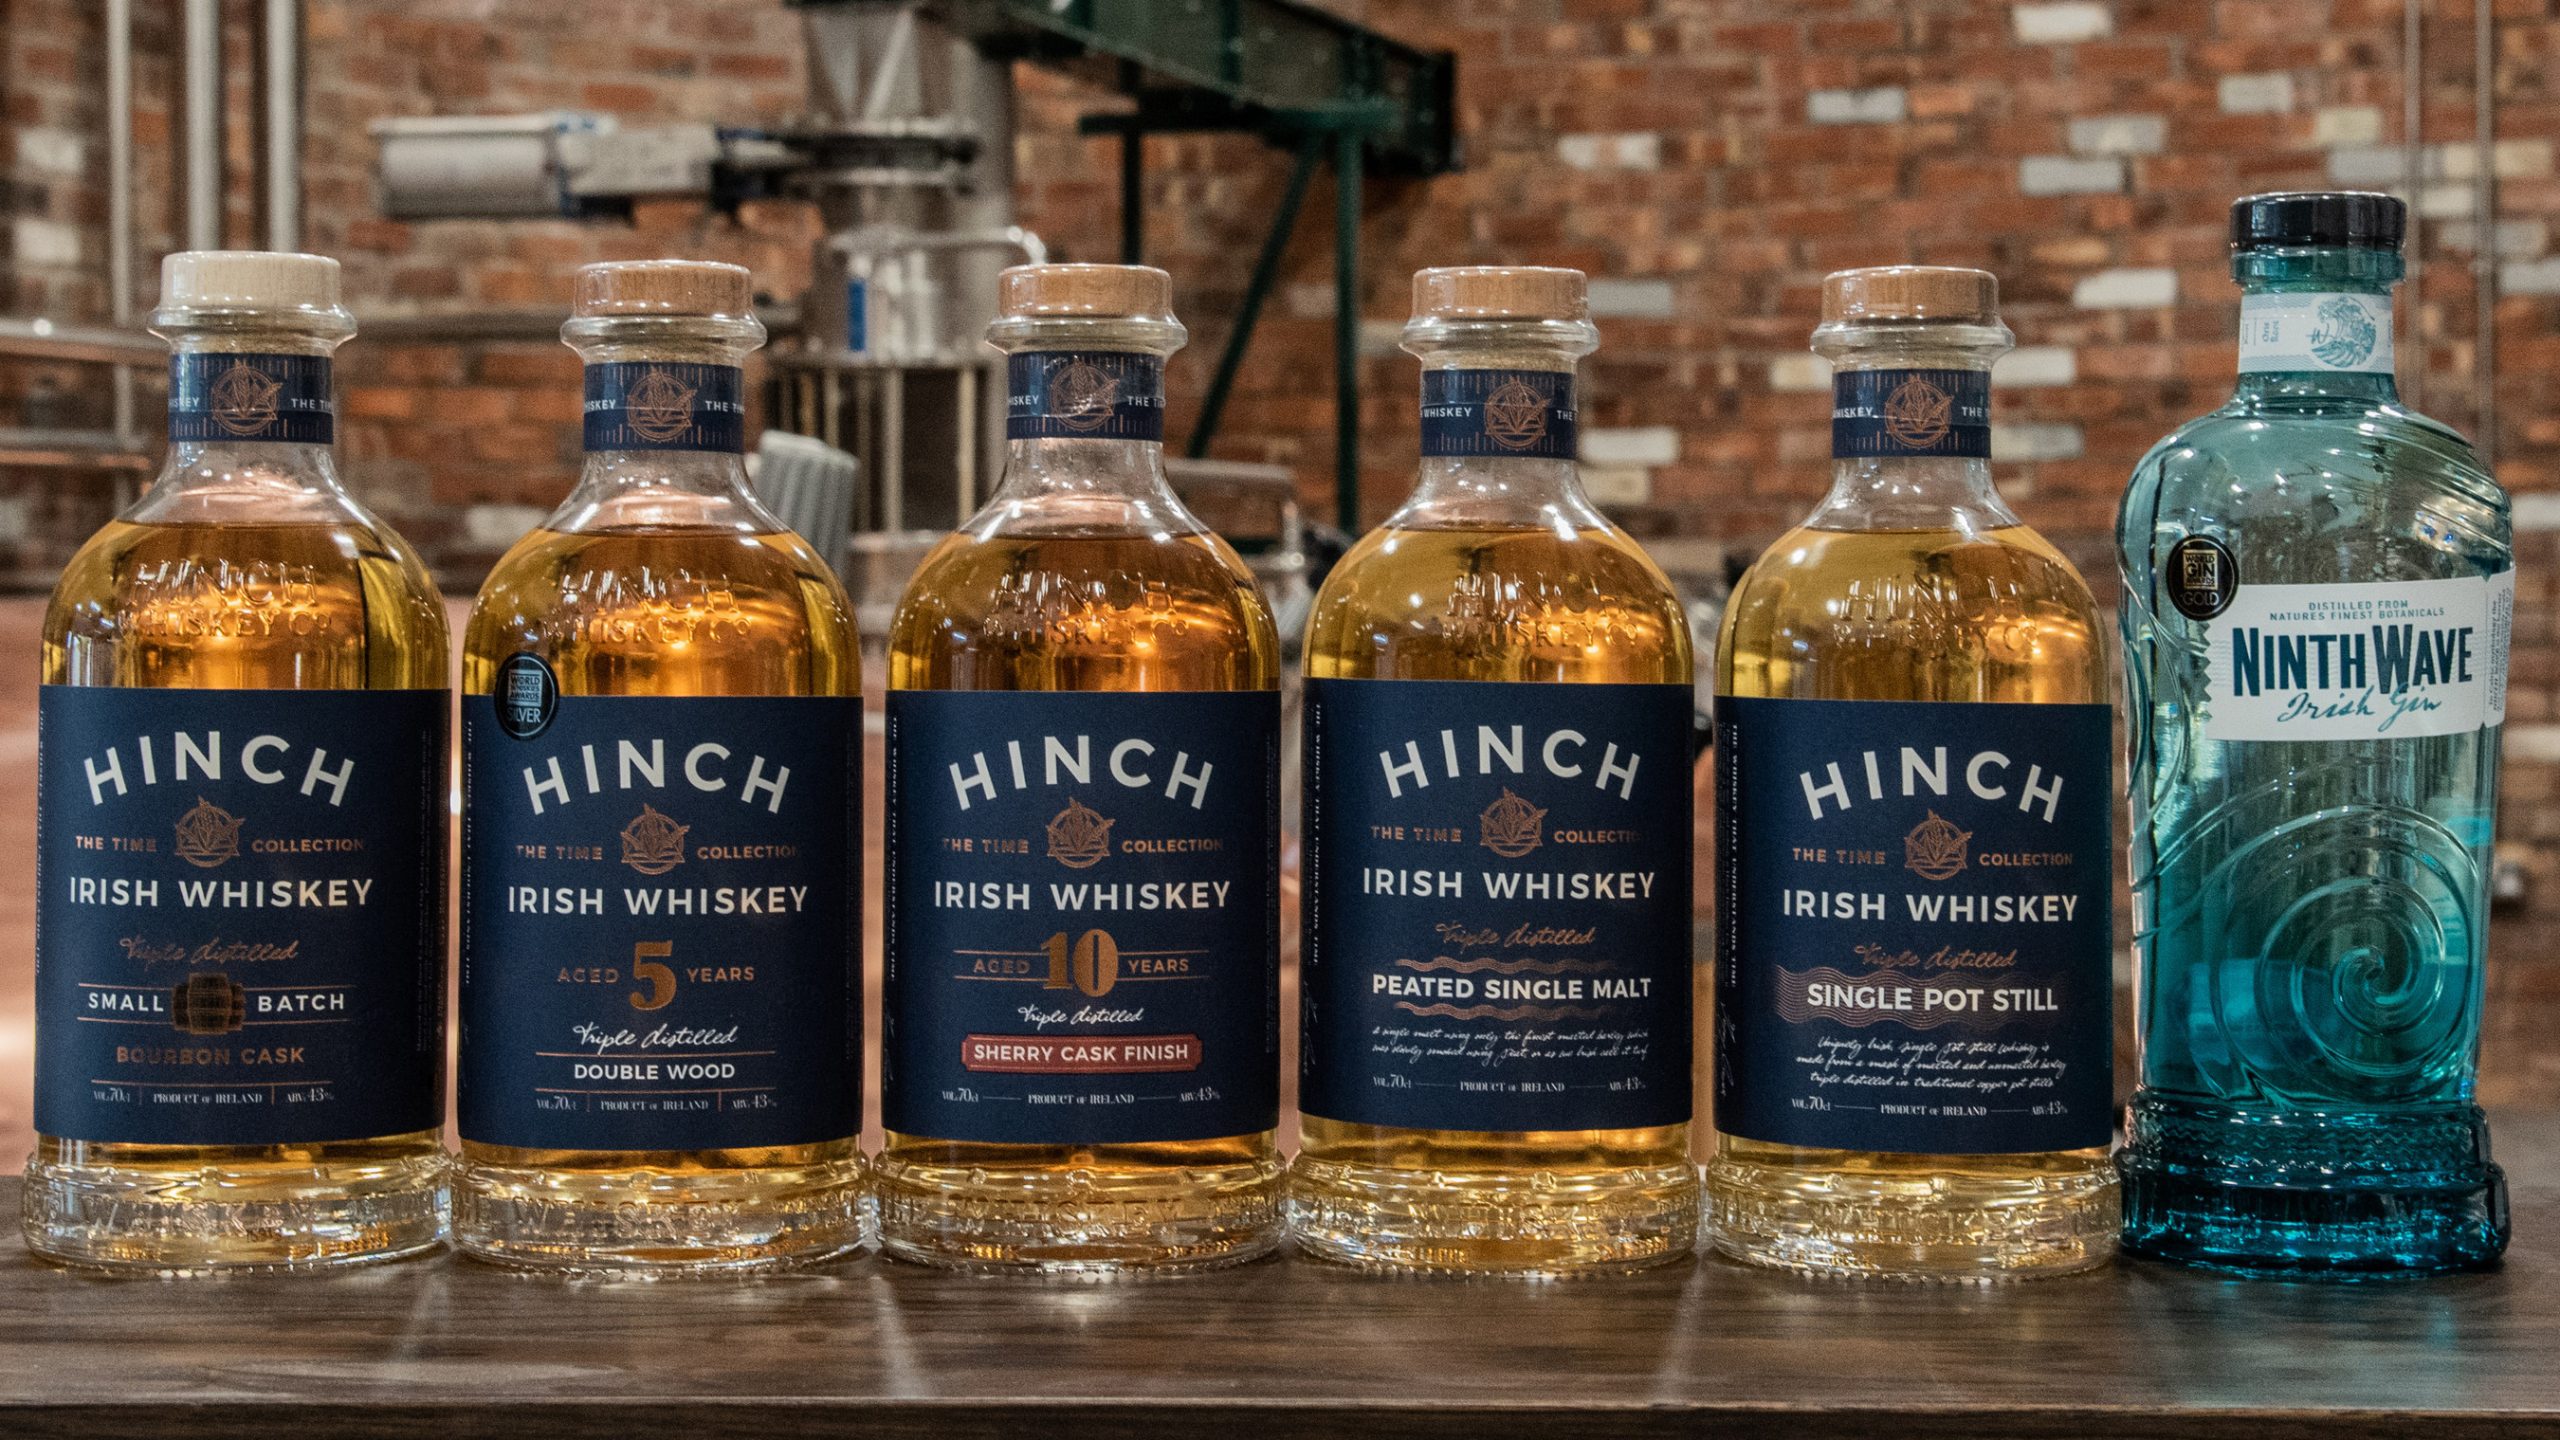 Hinch Irish Whiskey